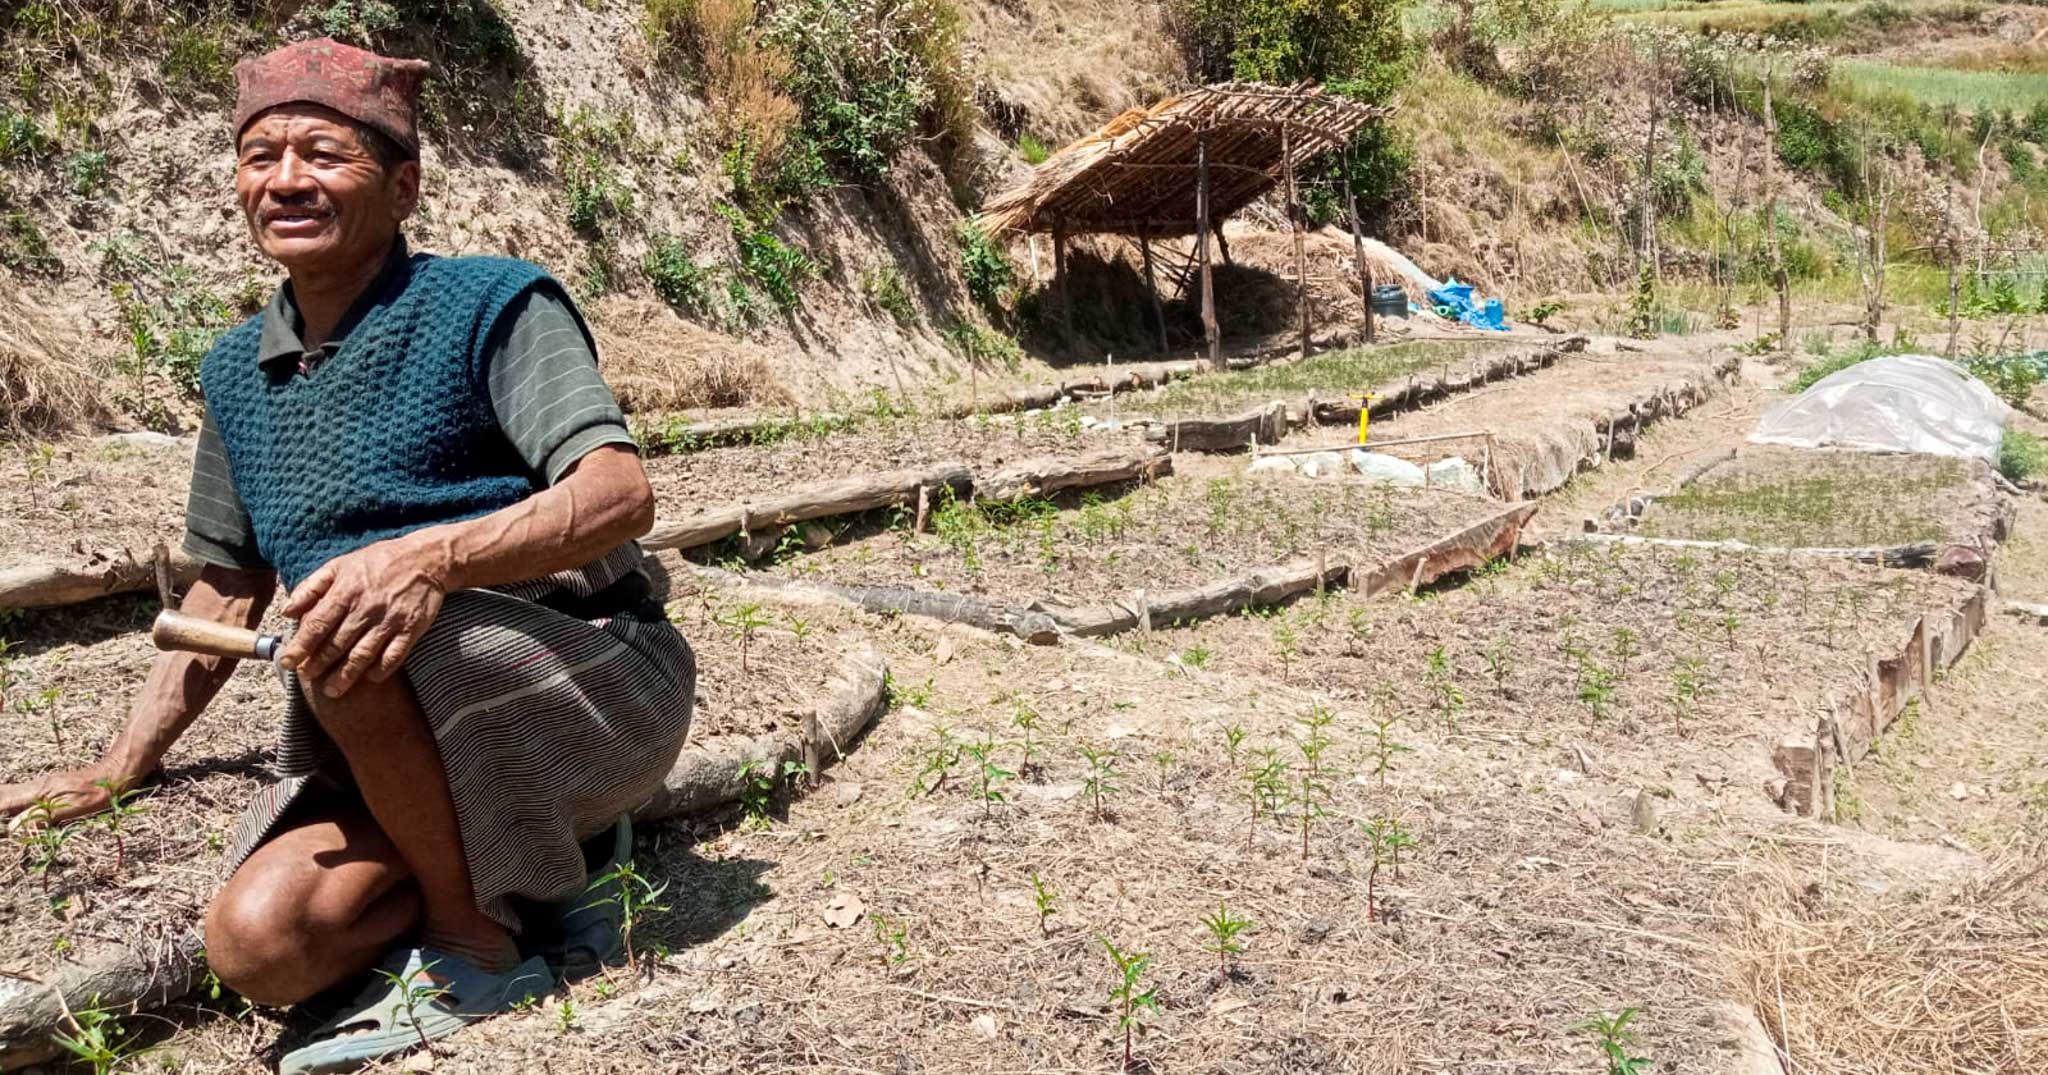 L’agricoltore Sete Budha utilizza metodi di coltivazione agroecologici e sementi adattate alle condizioni climatiche.